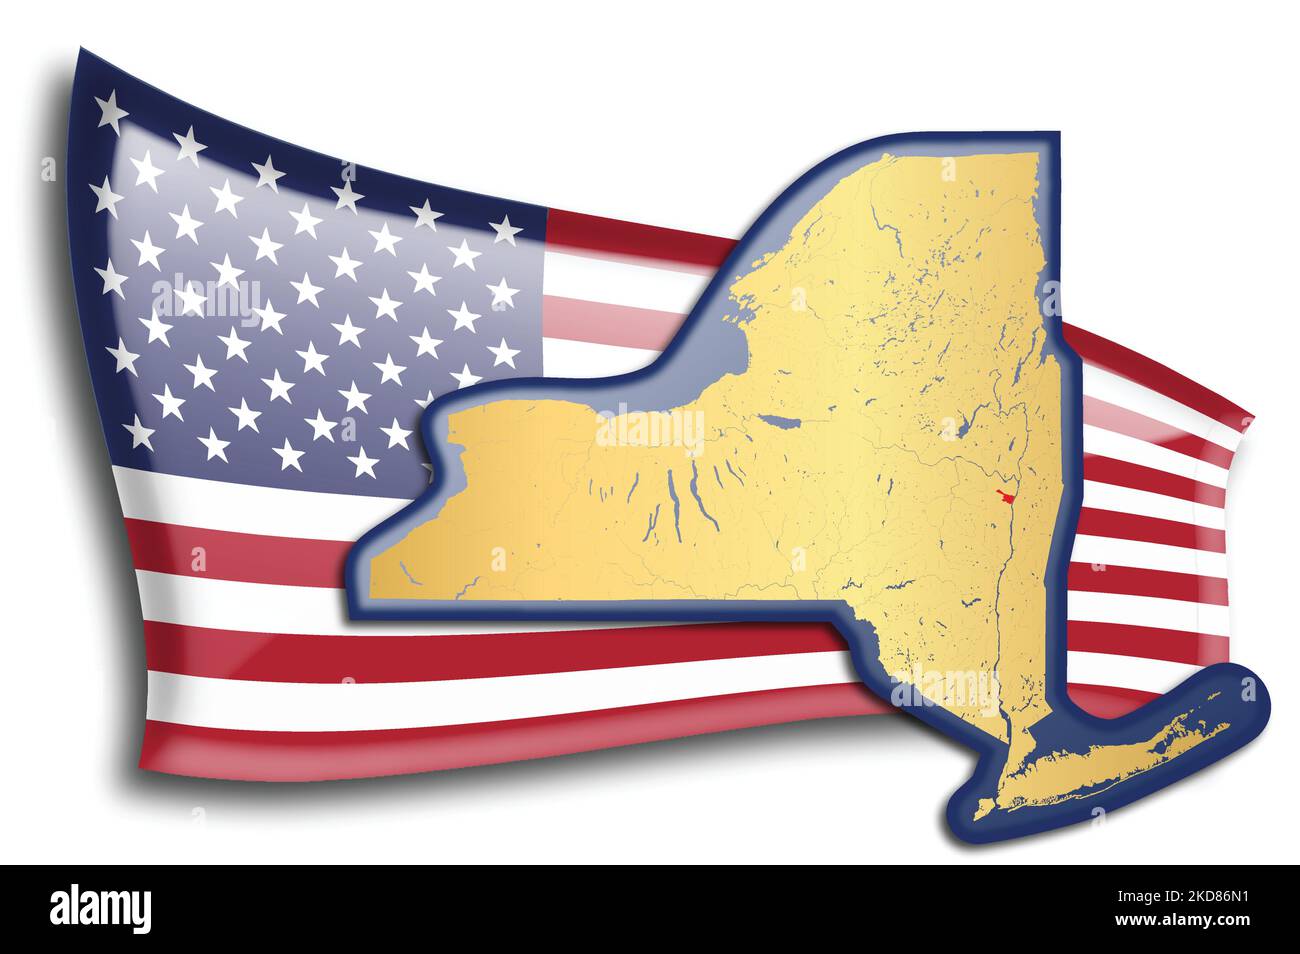 stati Uniti - mappa di New York contro una bandiera americana. Fiumi e laghi sono mostrati sulla mappa. La bandiera americana e la mappa dello stato possono essere utilizzate separatamente e. Illustrazione Vettoriale